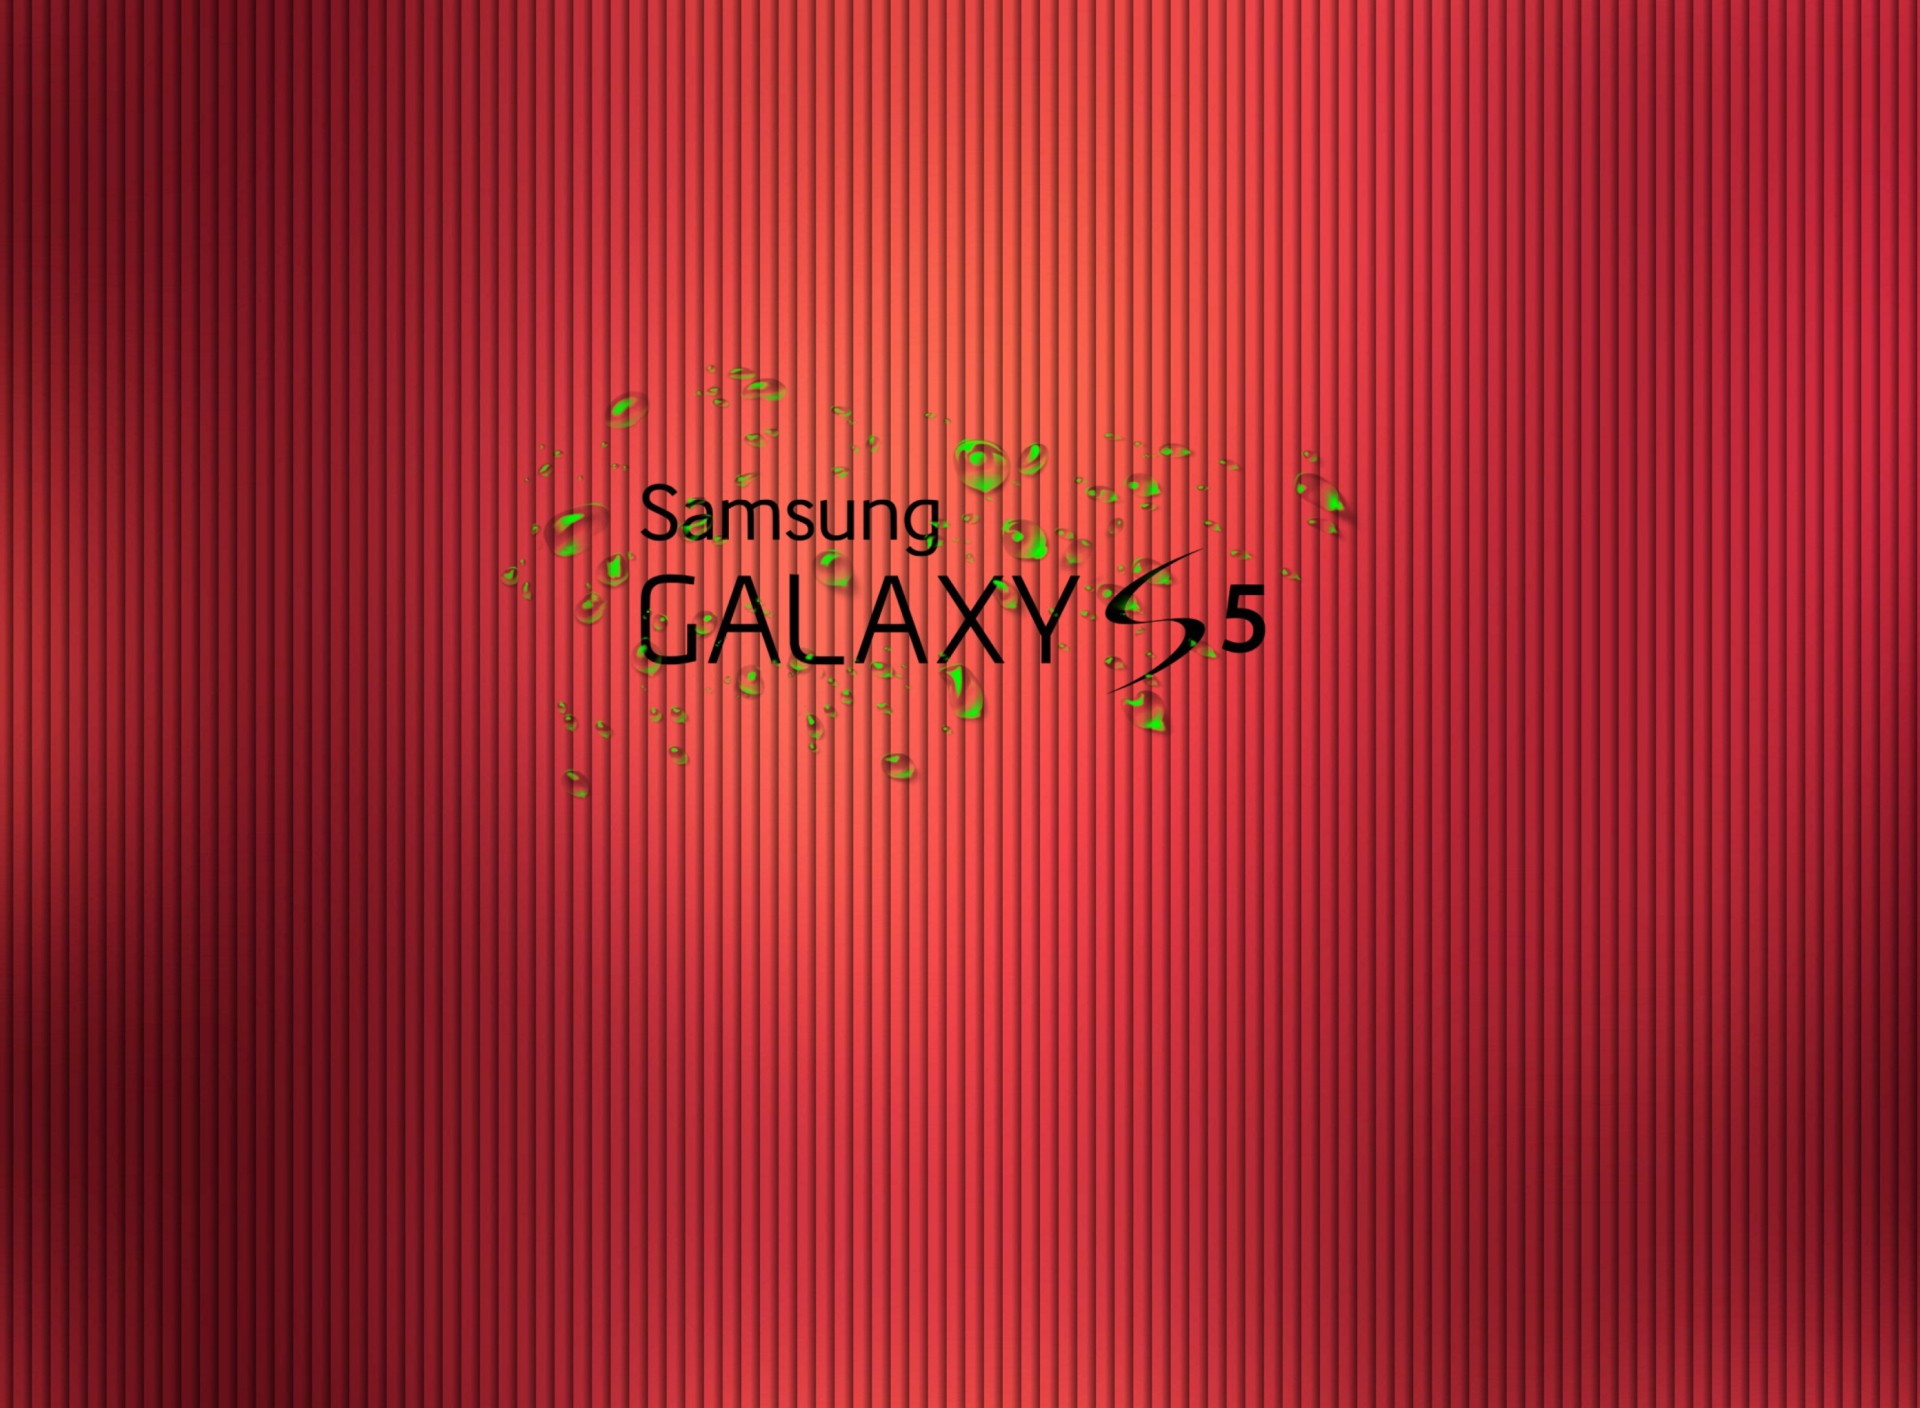 Galaxy S5 wallpaper 1920x1408